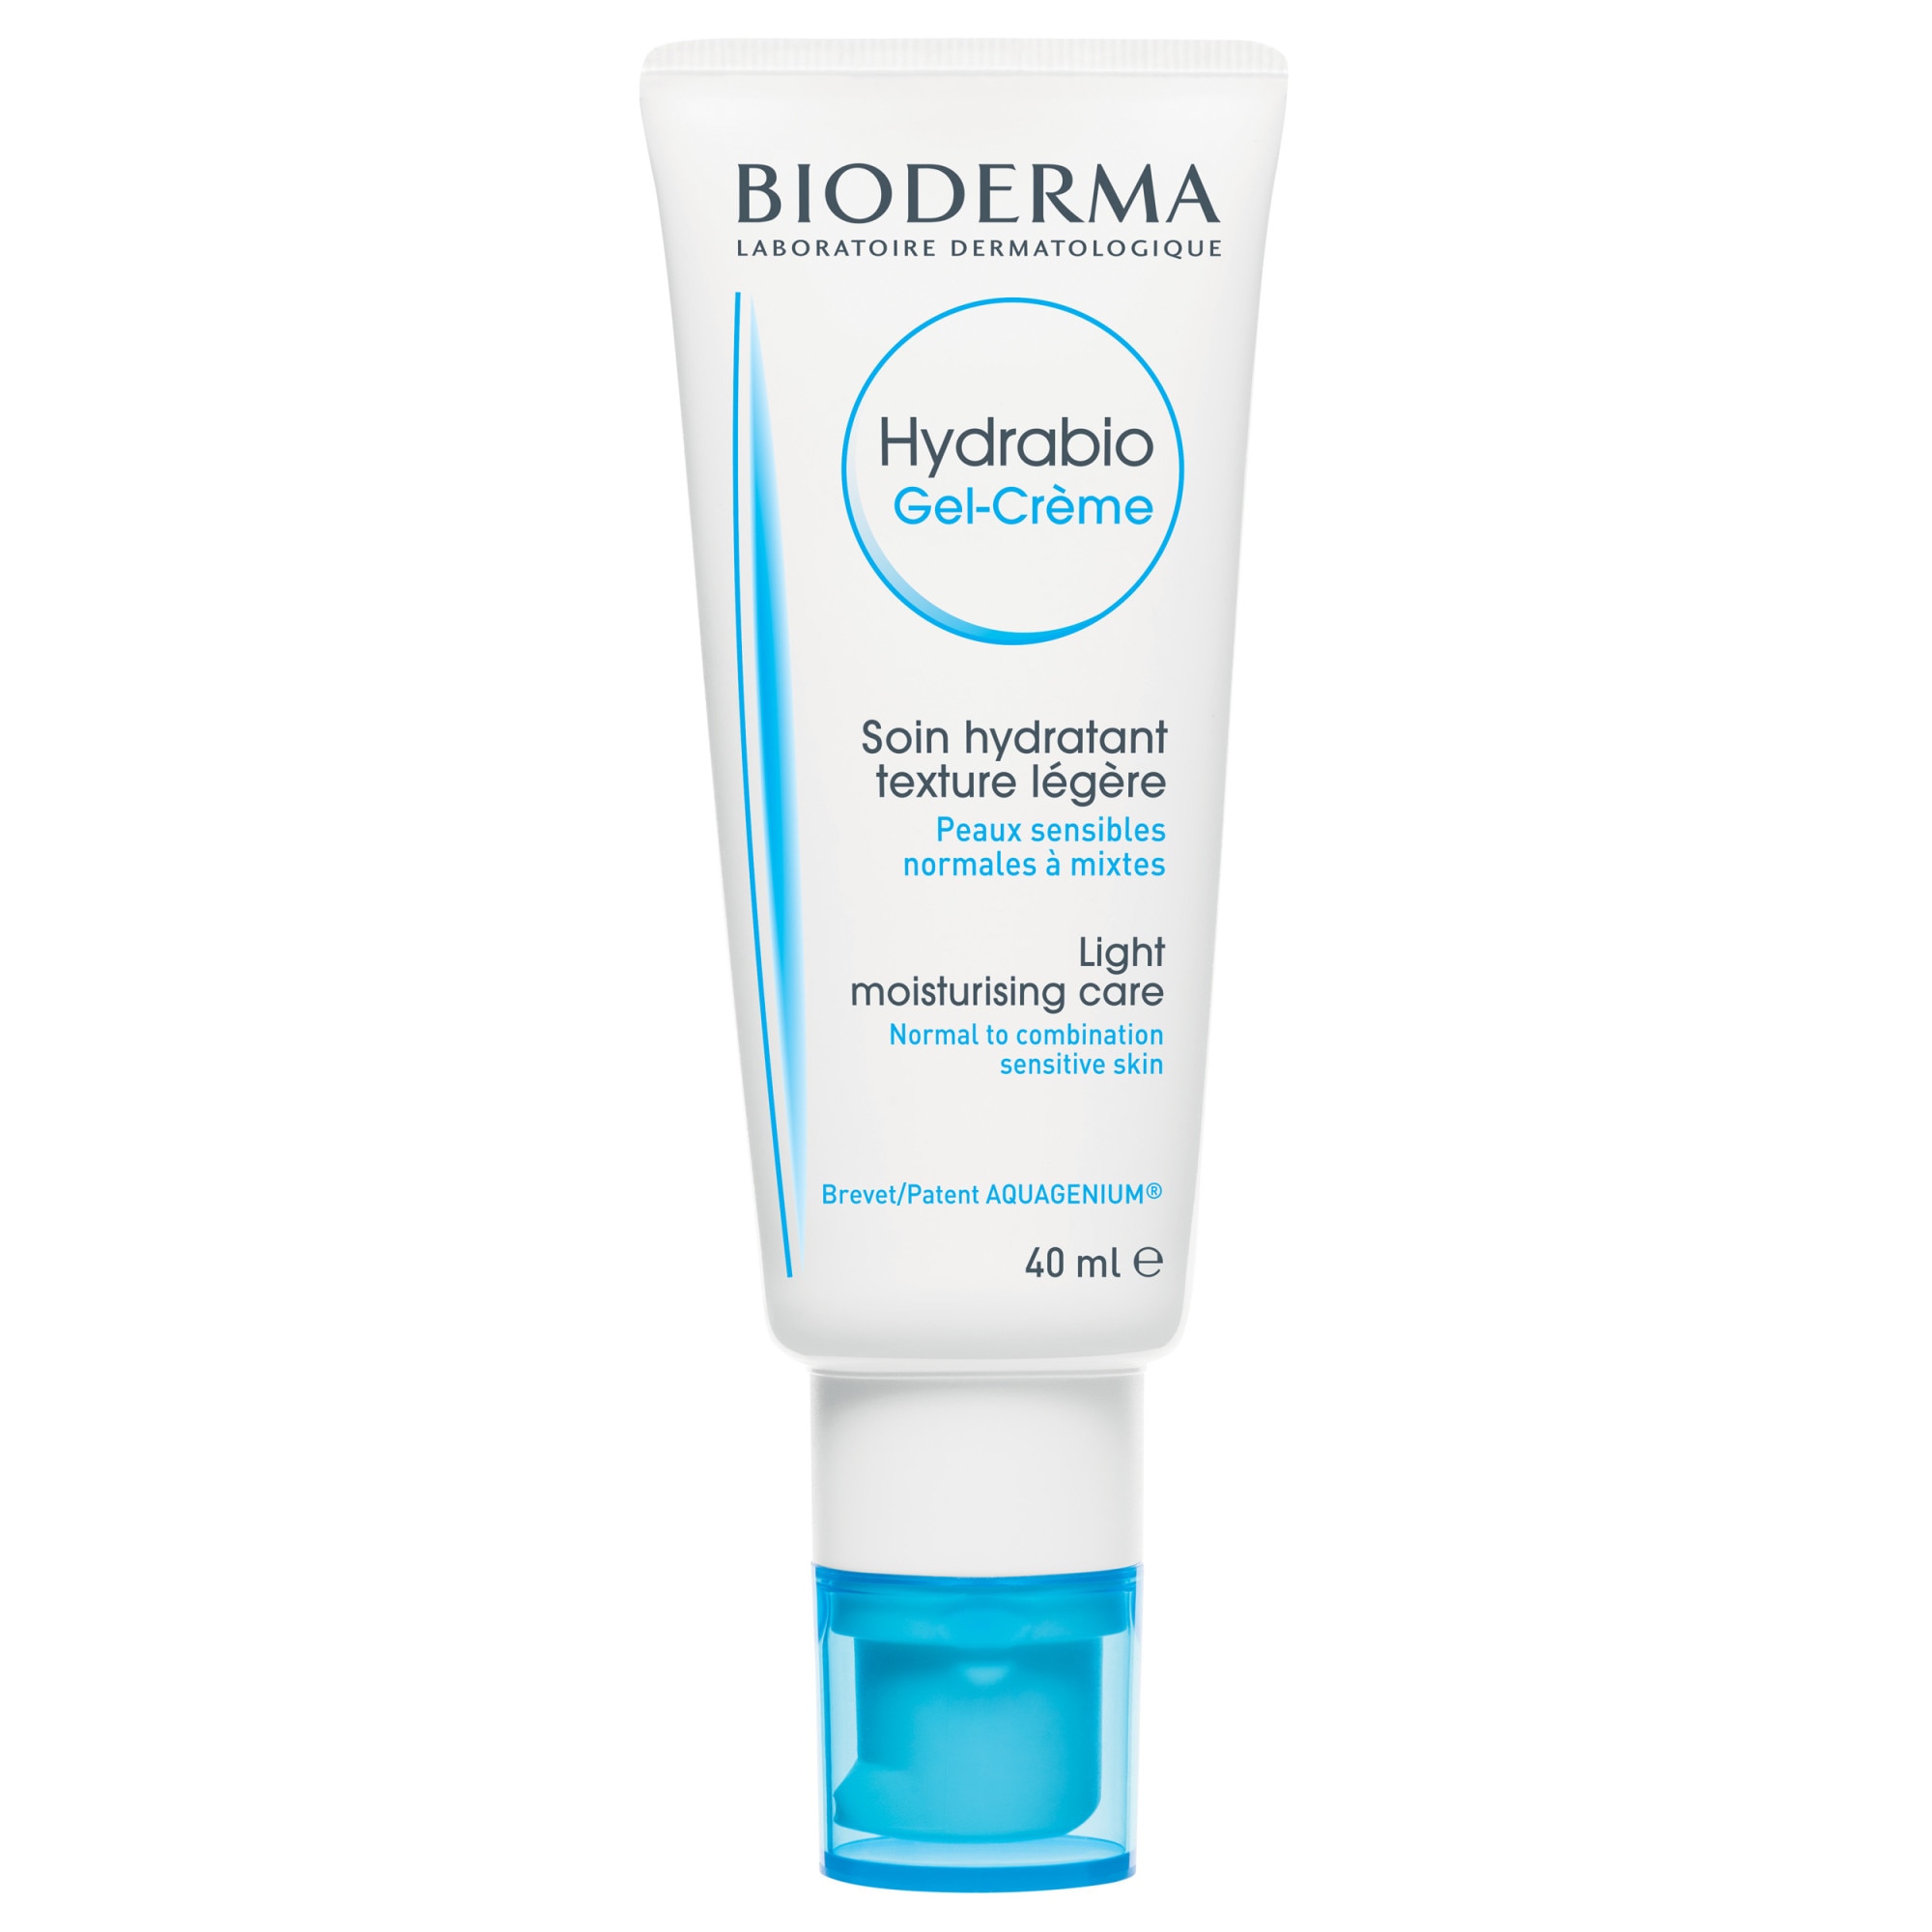 Bioderma | Creme și tratamente dermato-cosmetice Bioderma | impactbuzoian.ro